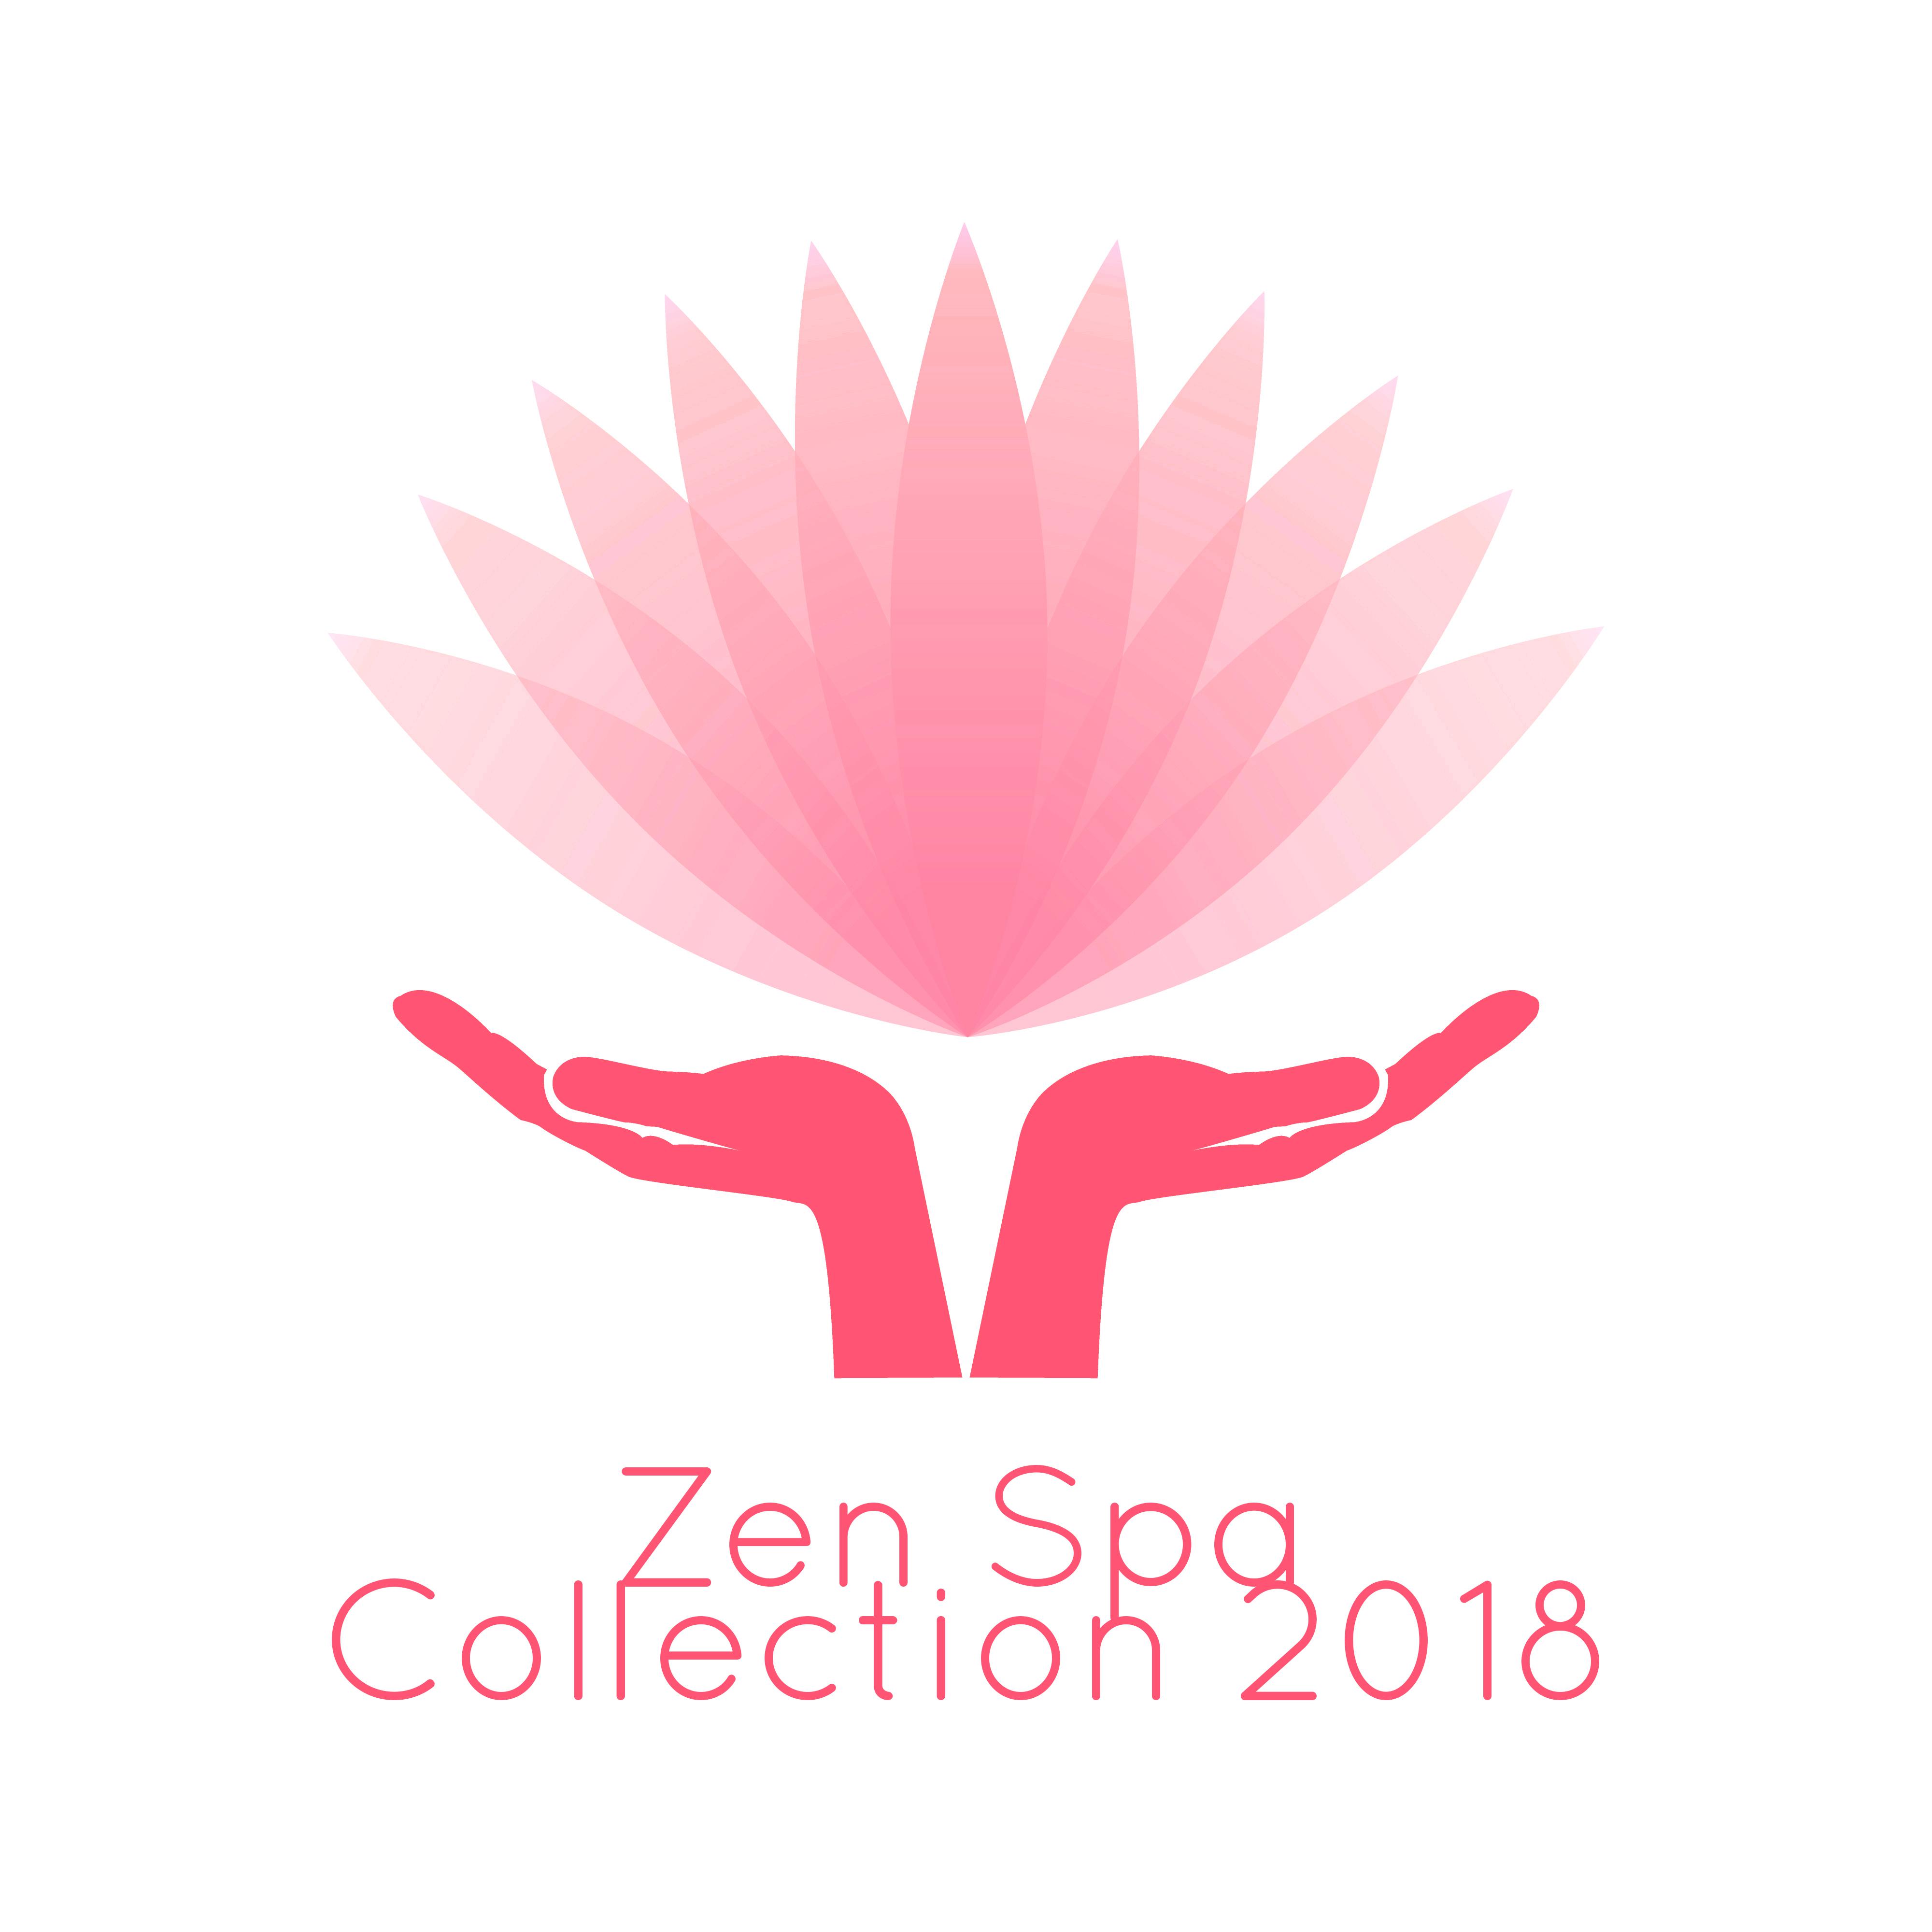 Zen Spa Collection 2018